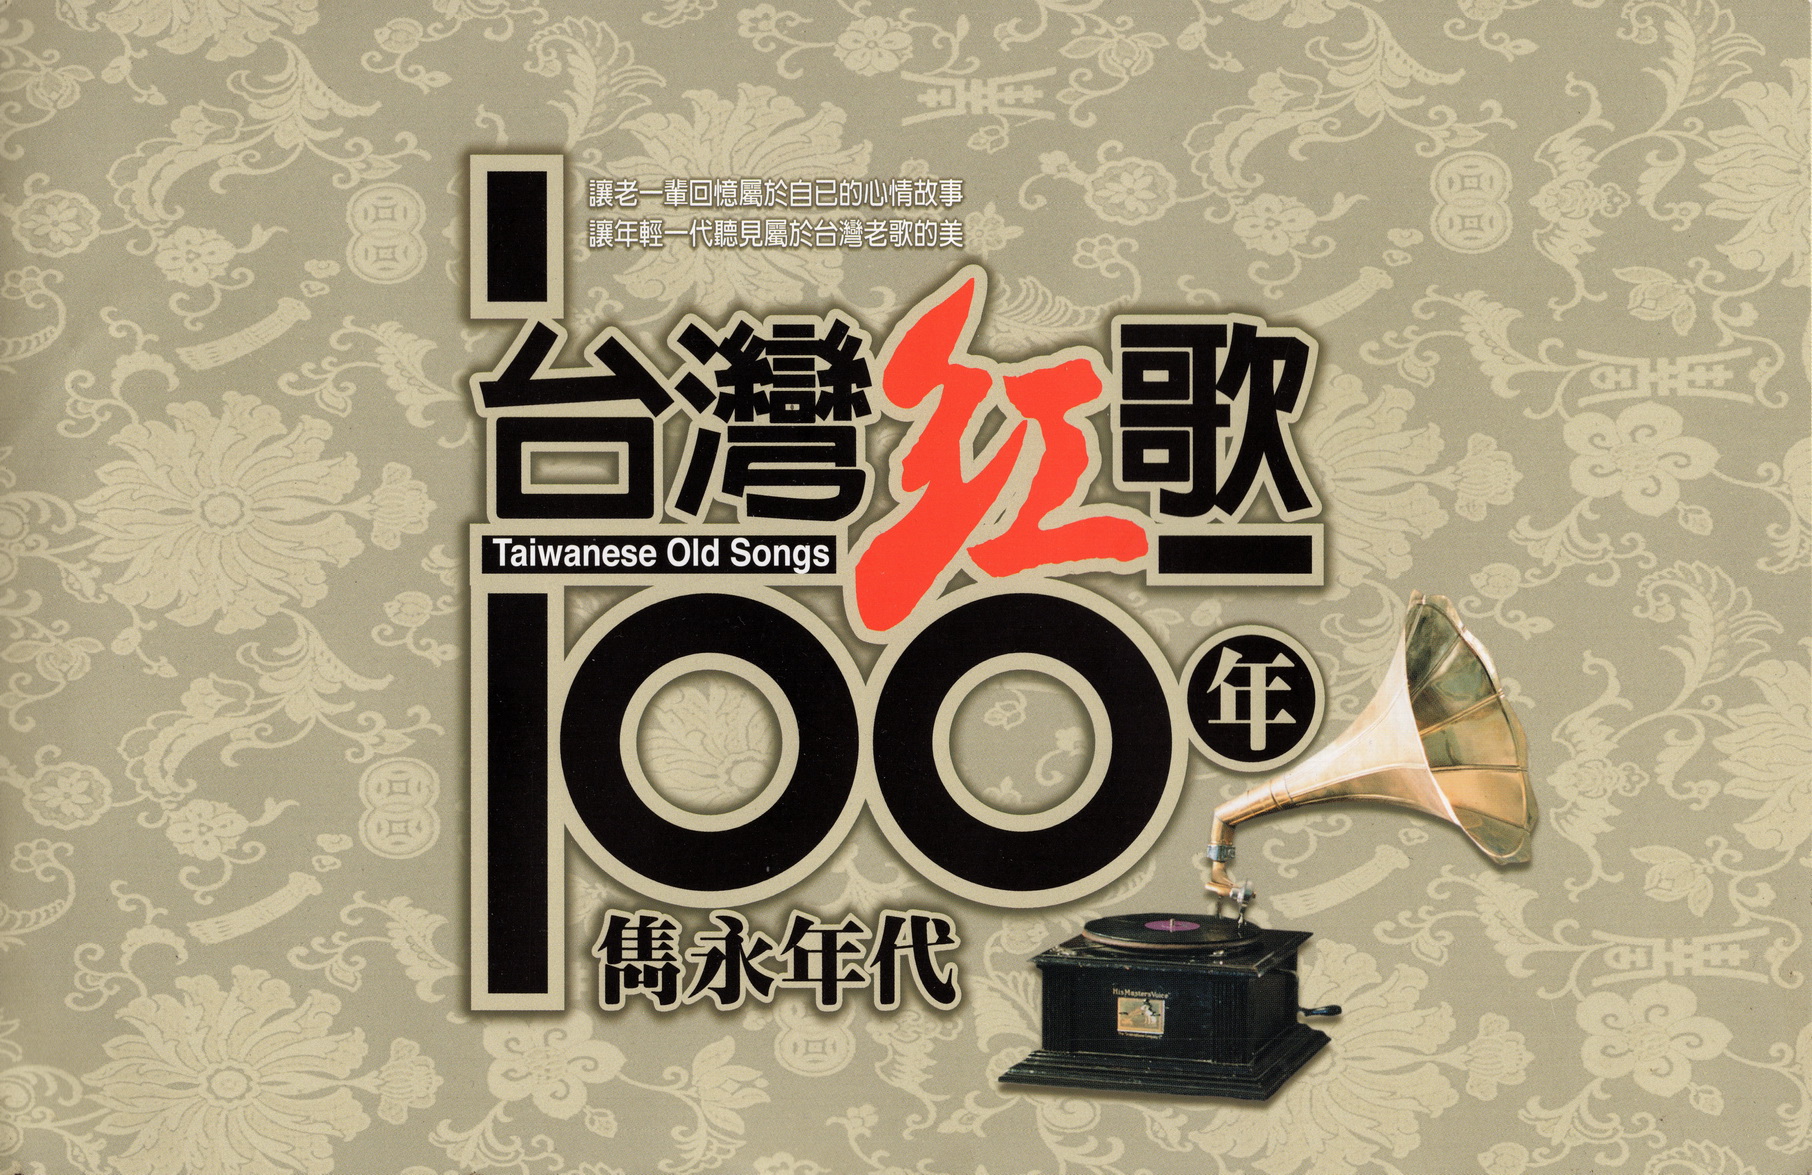 群星-台湾红歌100年 隽永年代 20CD合集[无损WAV/9.83GB]百度云盘打包下载 影音资源 第1张